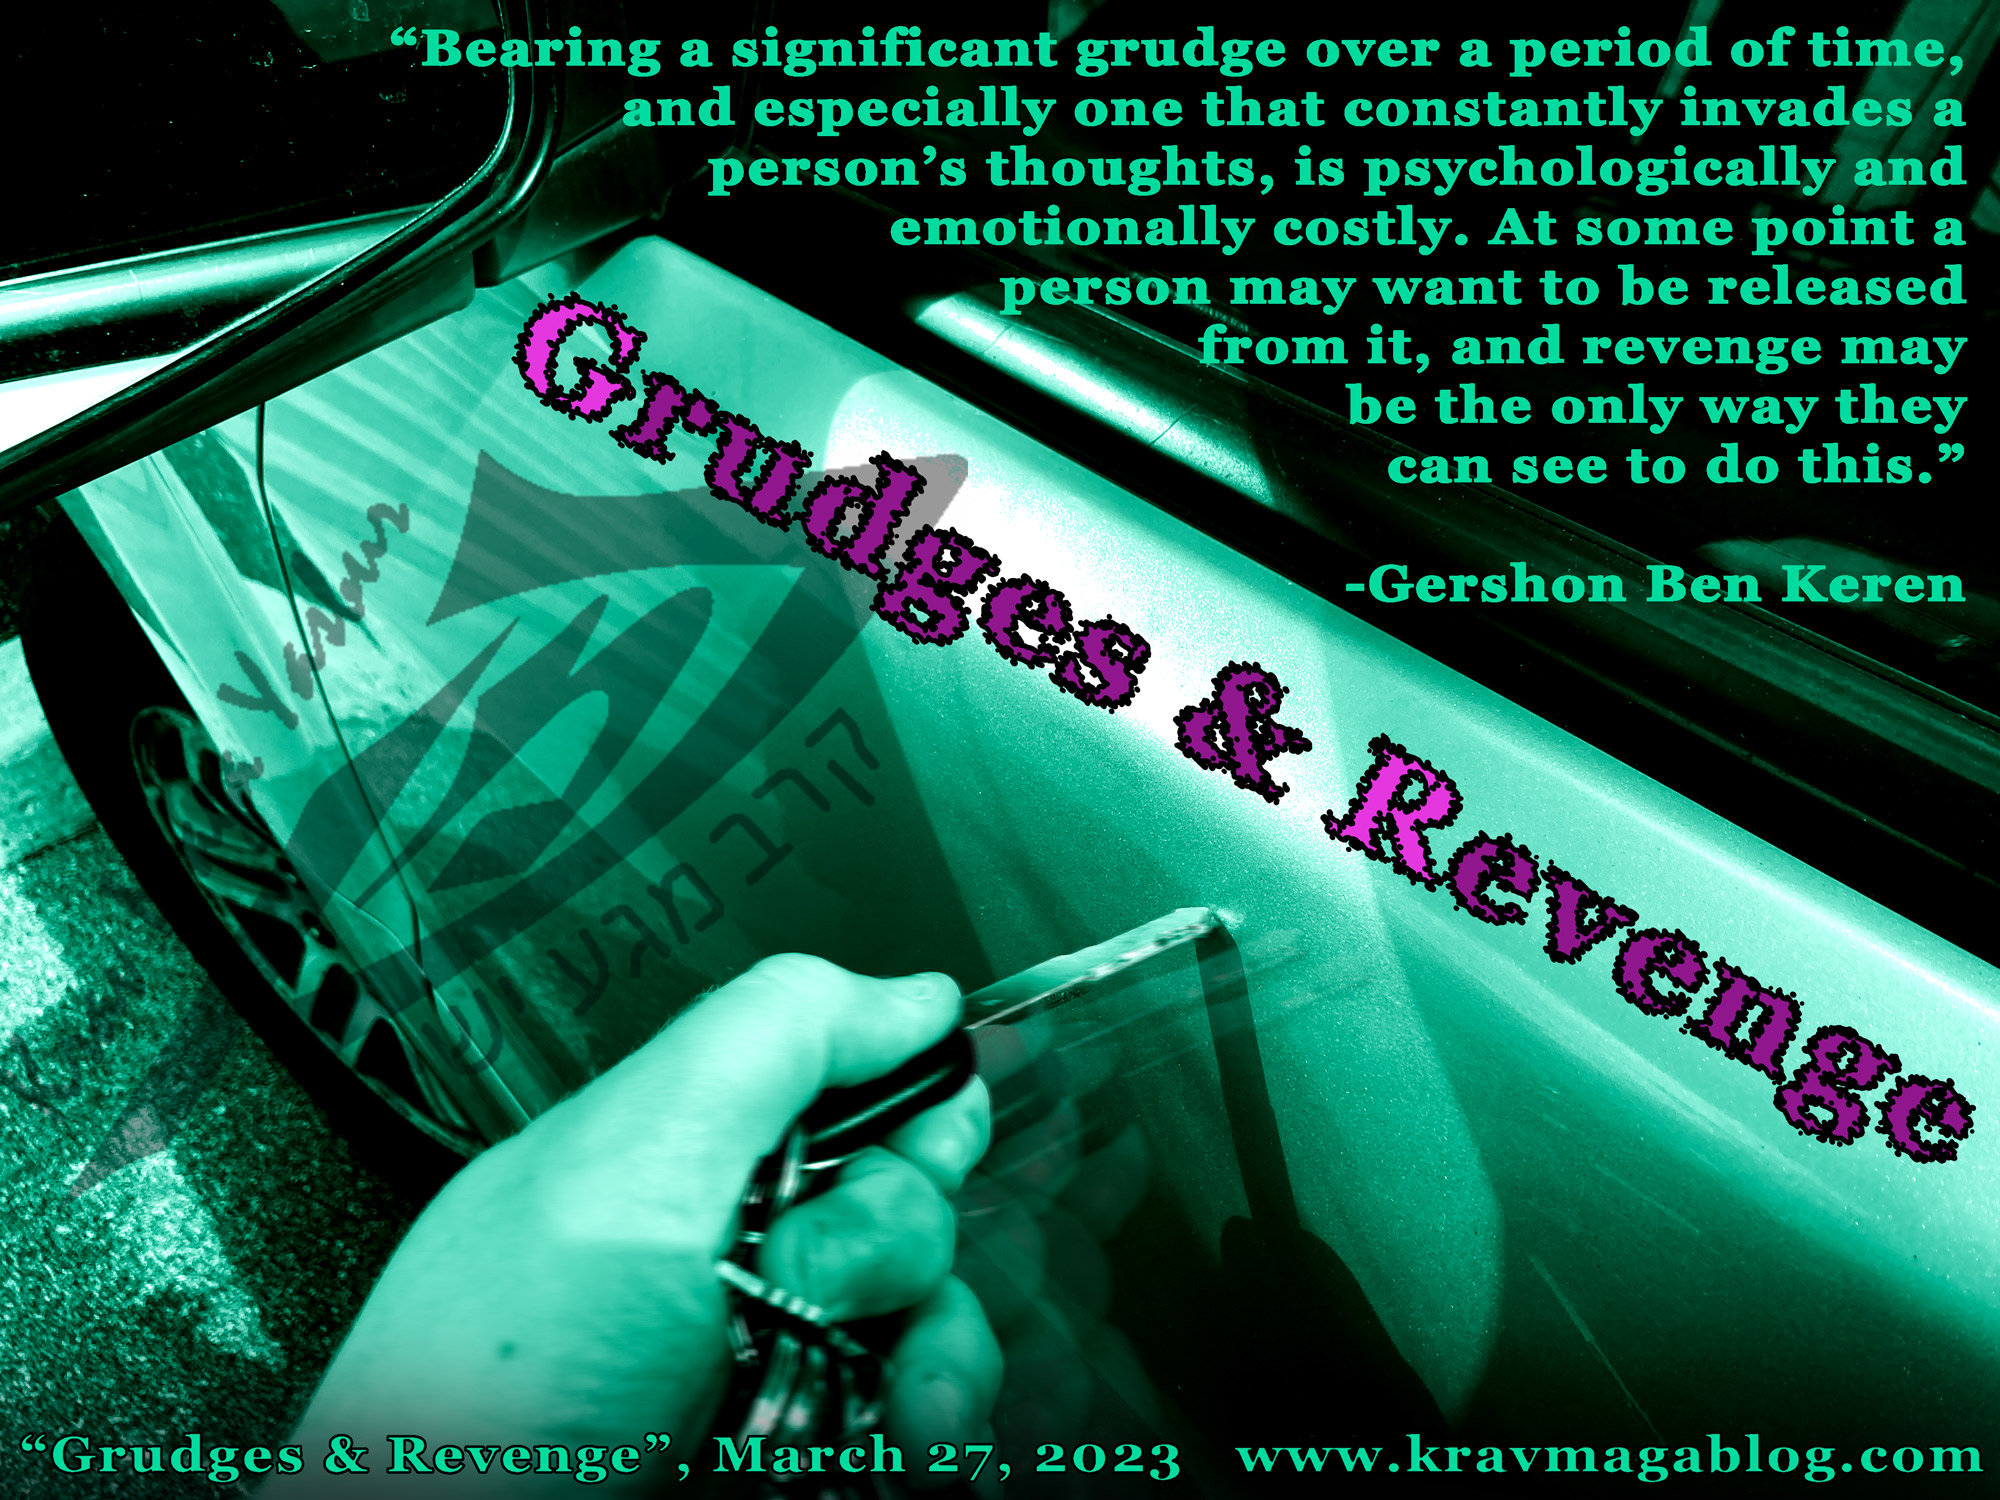 Blog About Grudges & Revenge